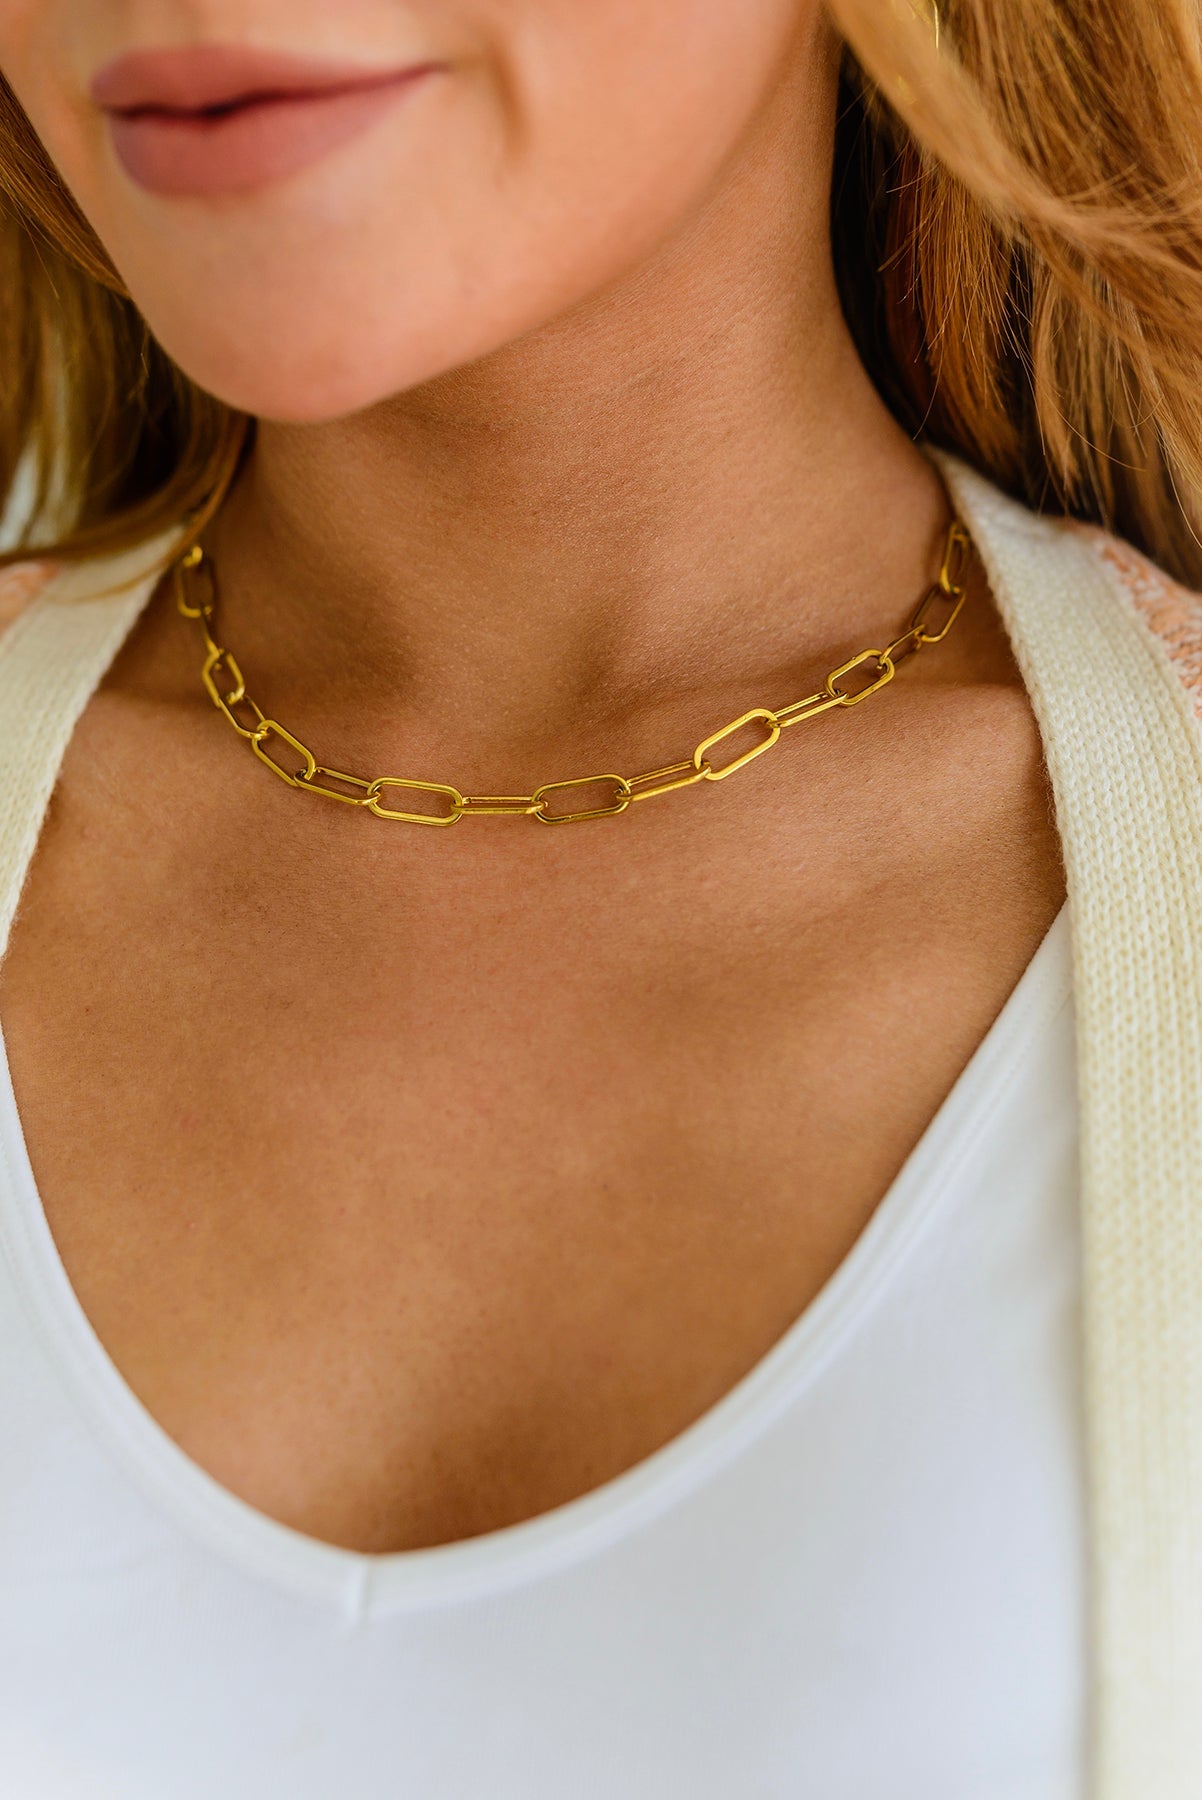 Classic Paper Clip Chain Necklace - Lola Cerina Boutique